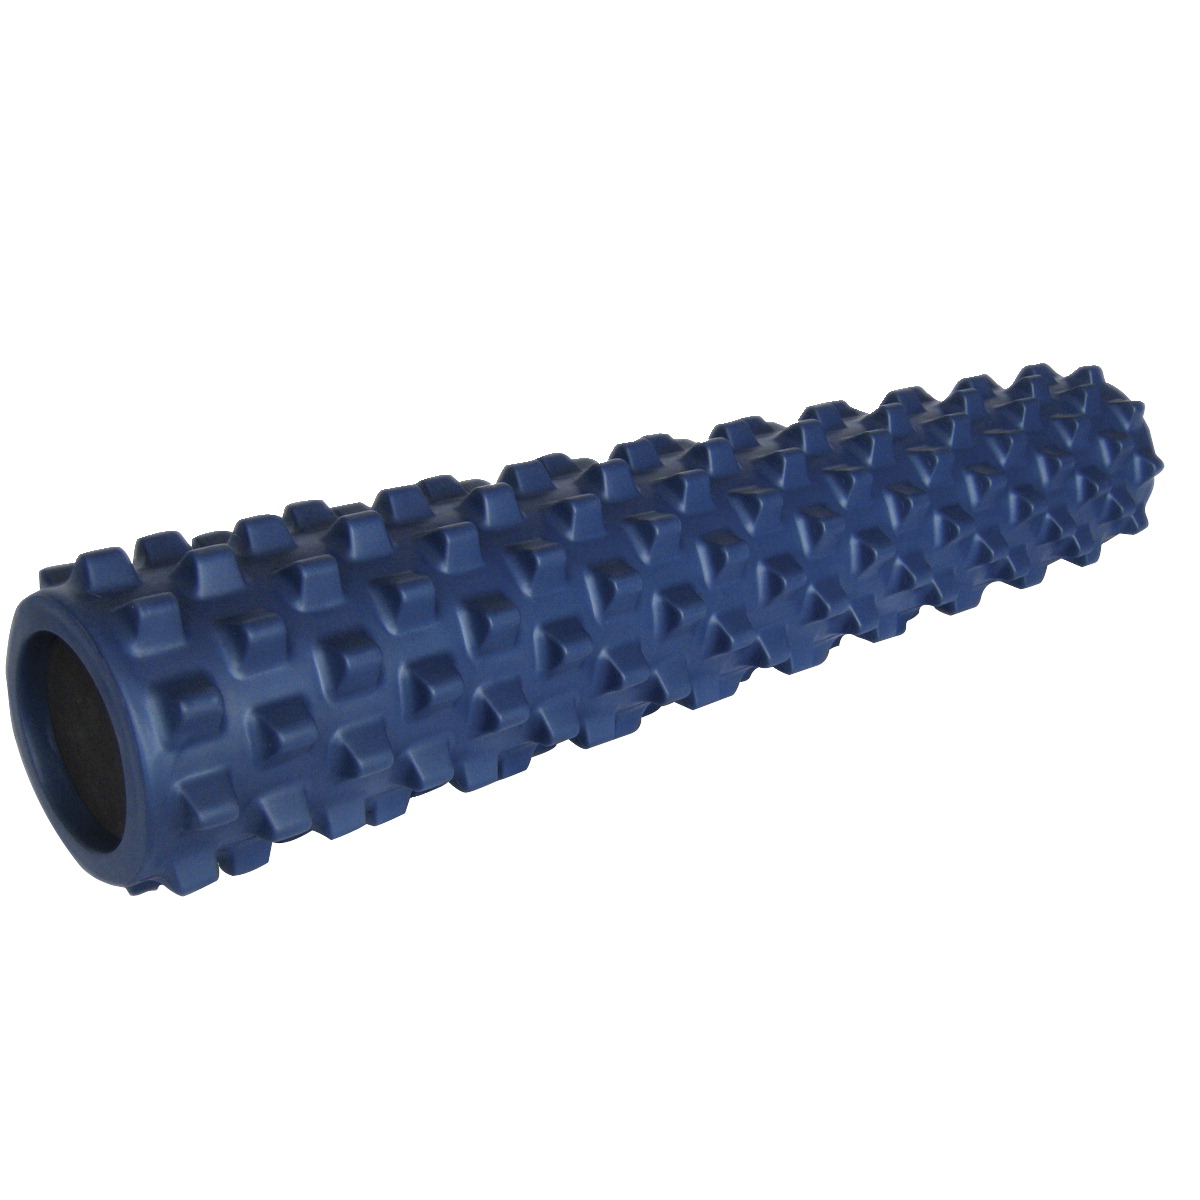 Togu 1588130 31 X 6 In. Rumbleroller Medium-firm Foam Massage Roller, Blue